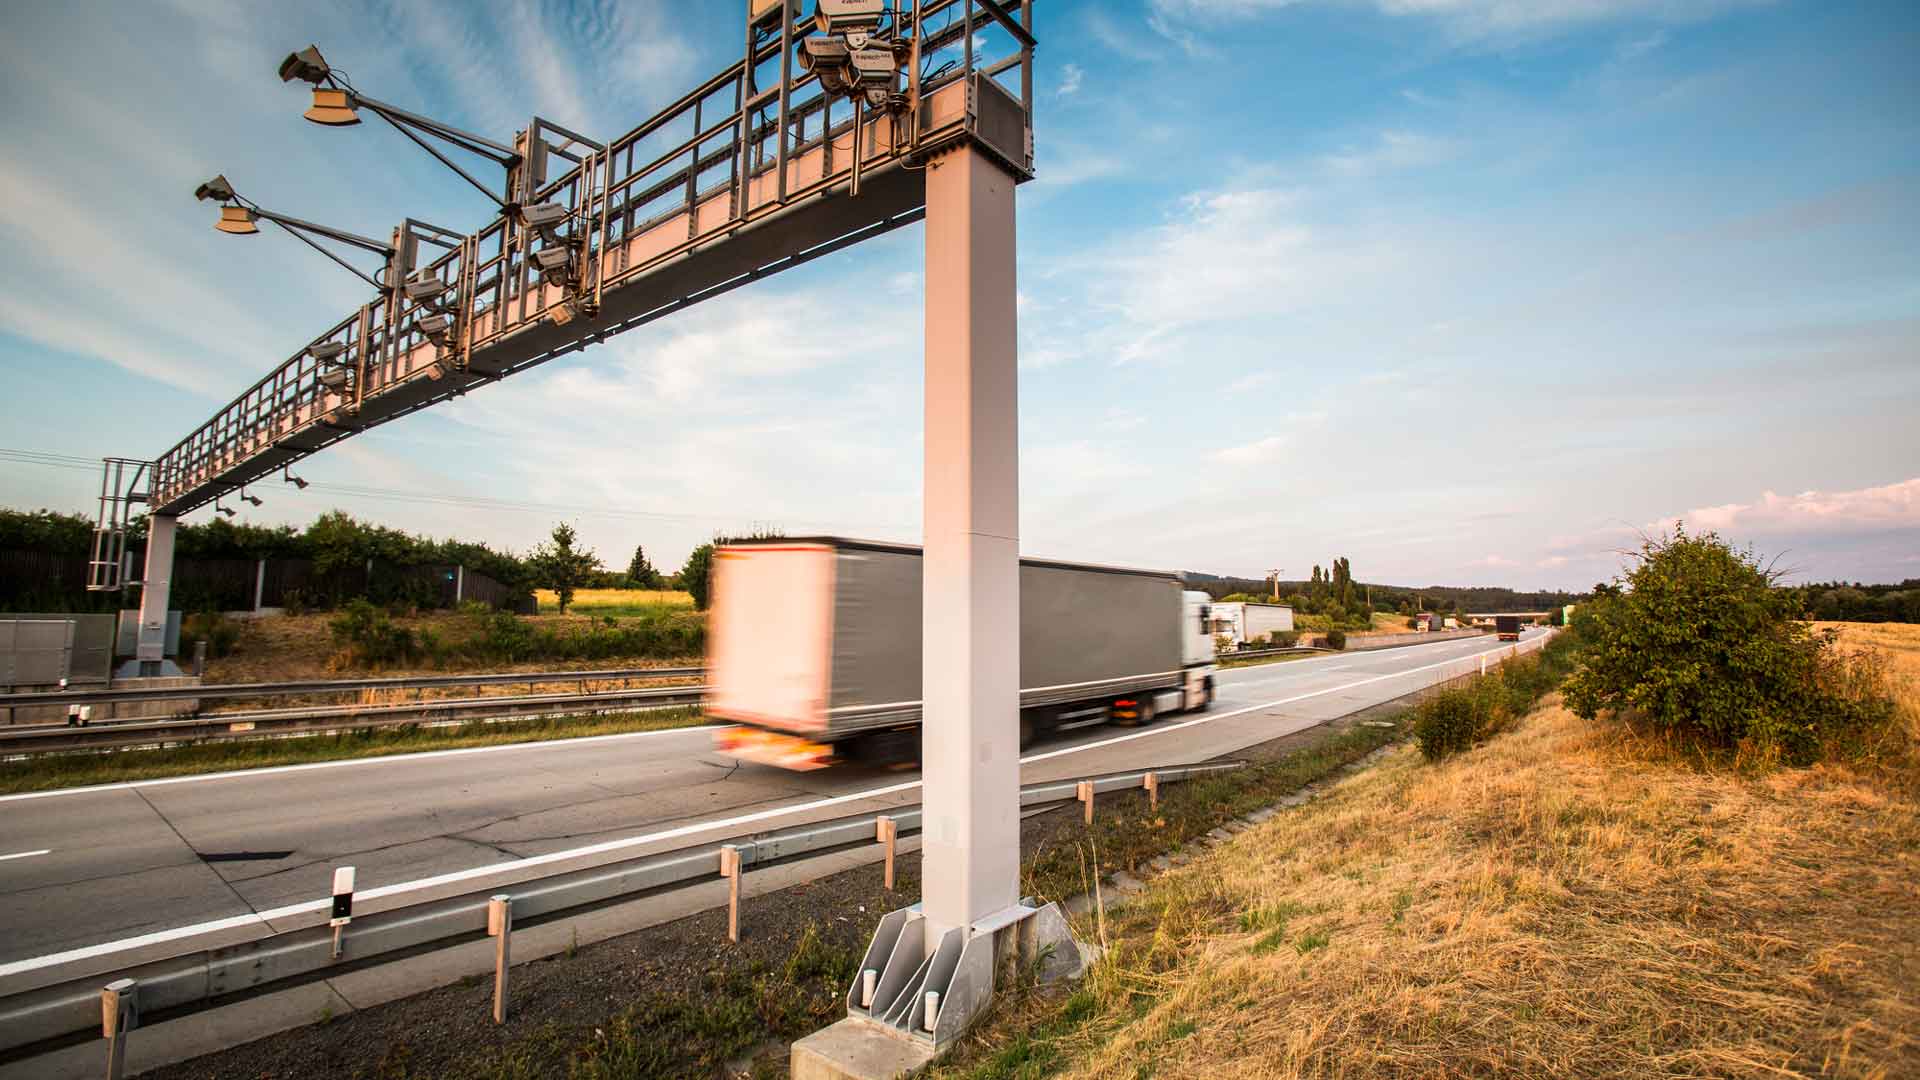 Pedaggi camion Svezia: nel nuovo sistema di calcolo anche le emissioni